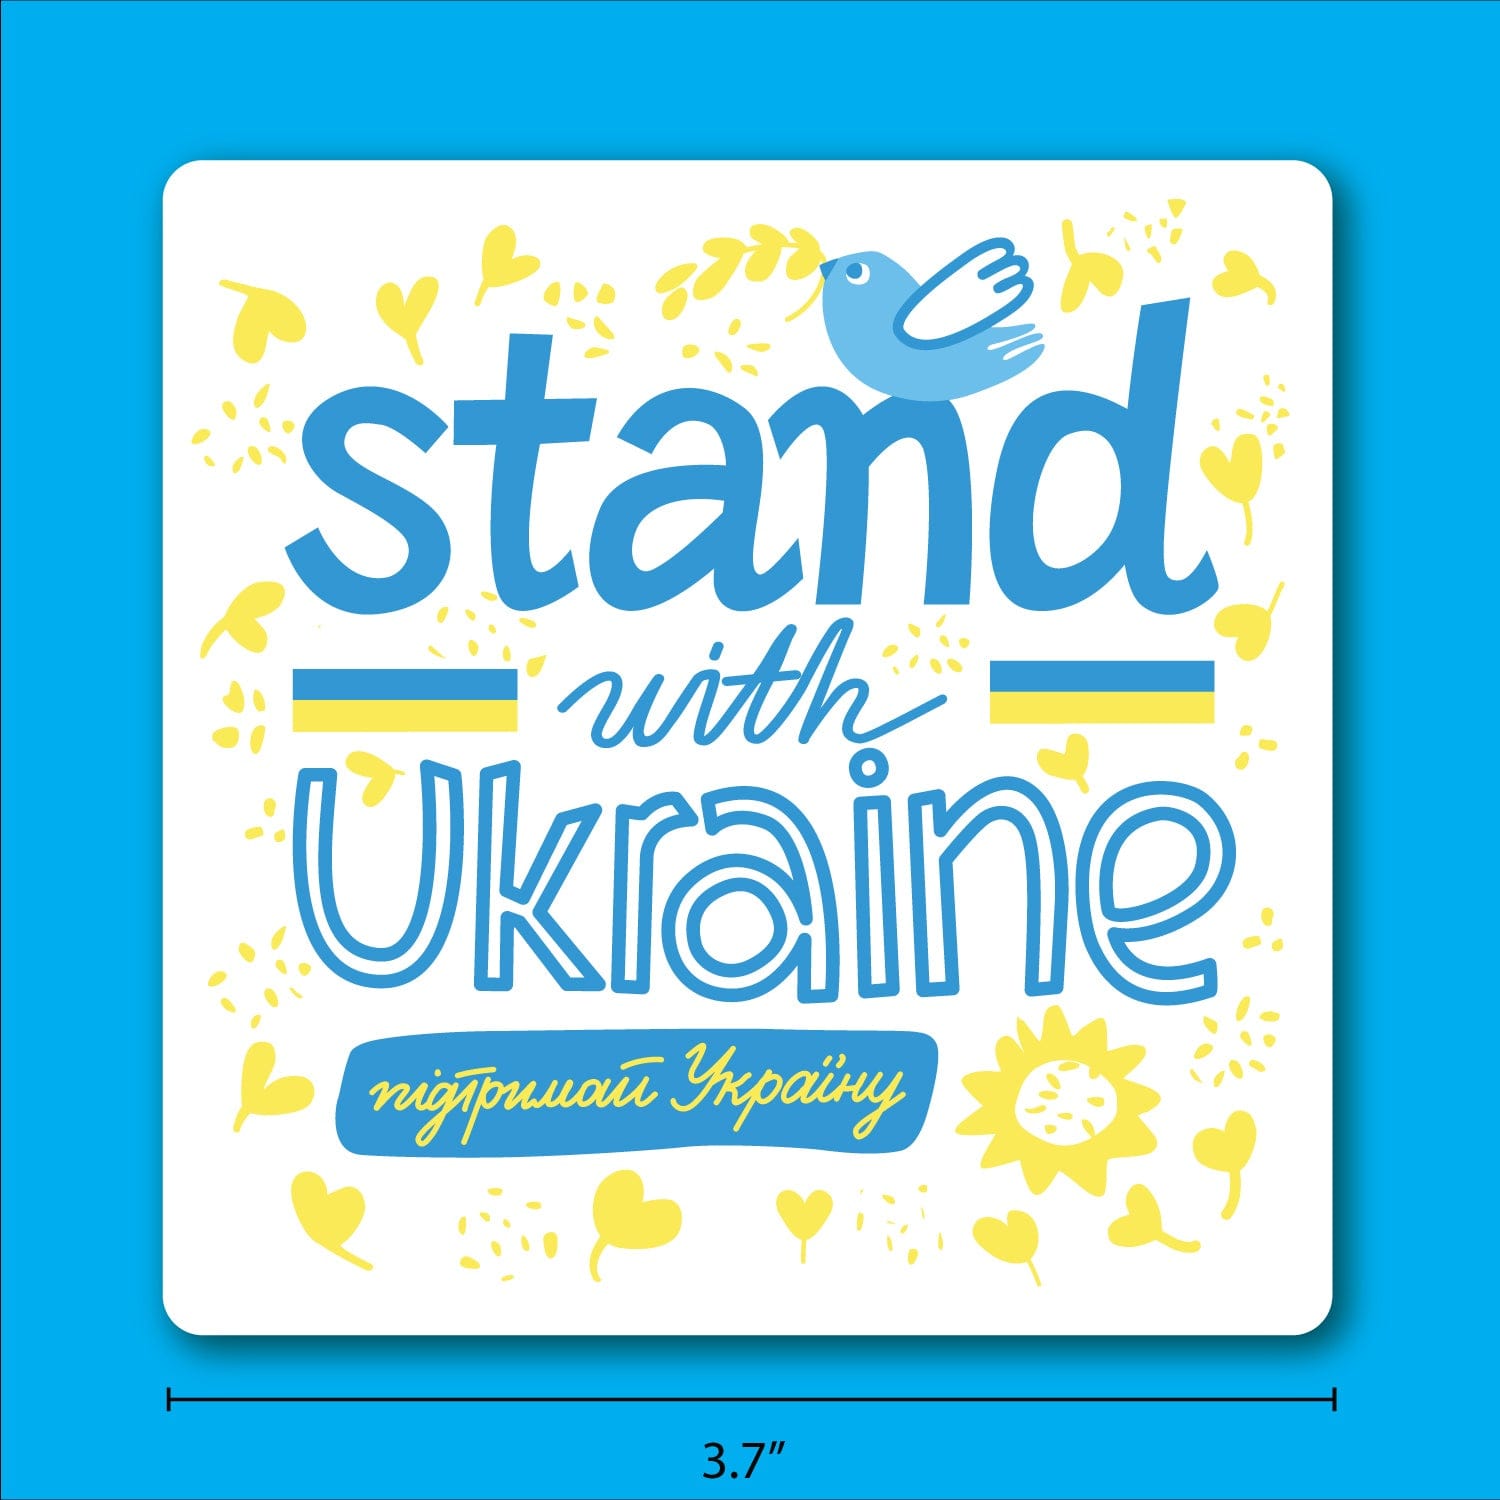 Stand With Ukraine Sticker